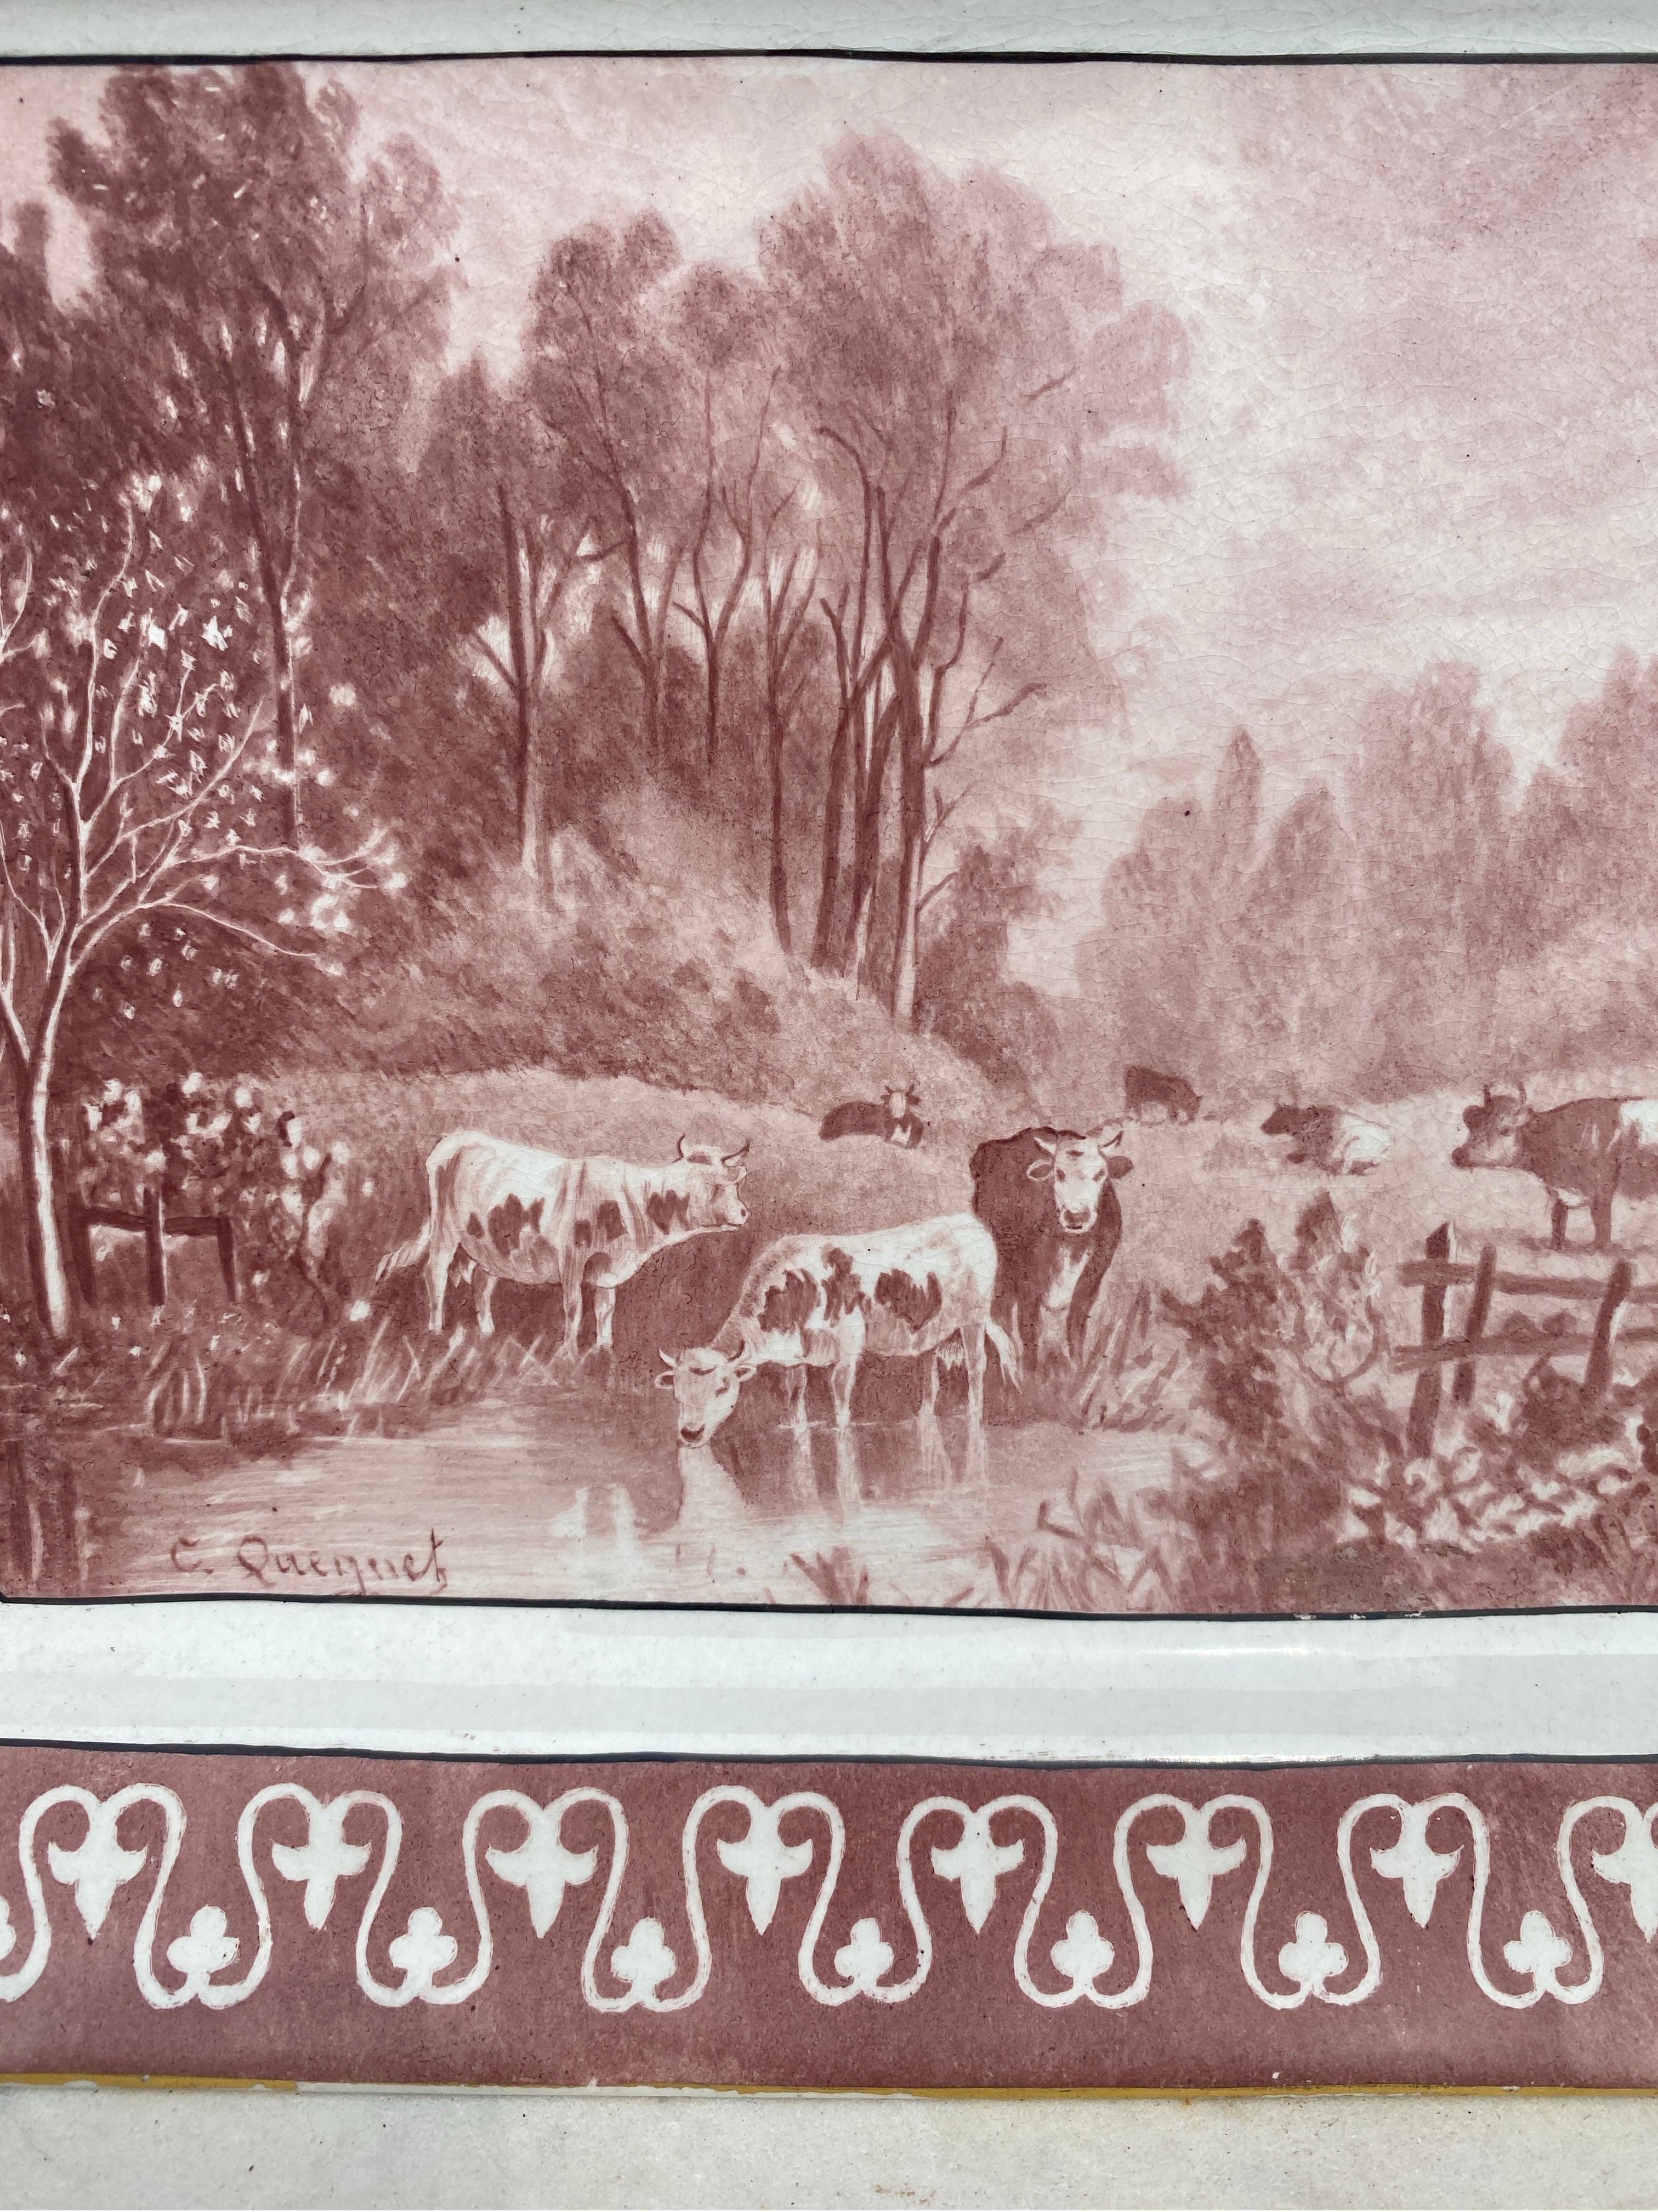 Rechteckige Platte mit Kühen aus dem 19. Jahrhundert, signiert Hippolyte Boulenger & co Choisy-le-Roi, um 1880.
Gemalte Szene mit Kühen auf einer Wiese und einem Fluss.

  